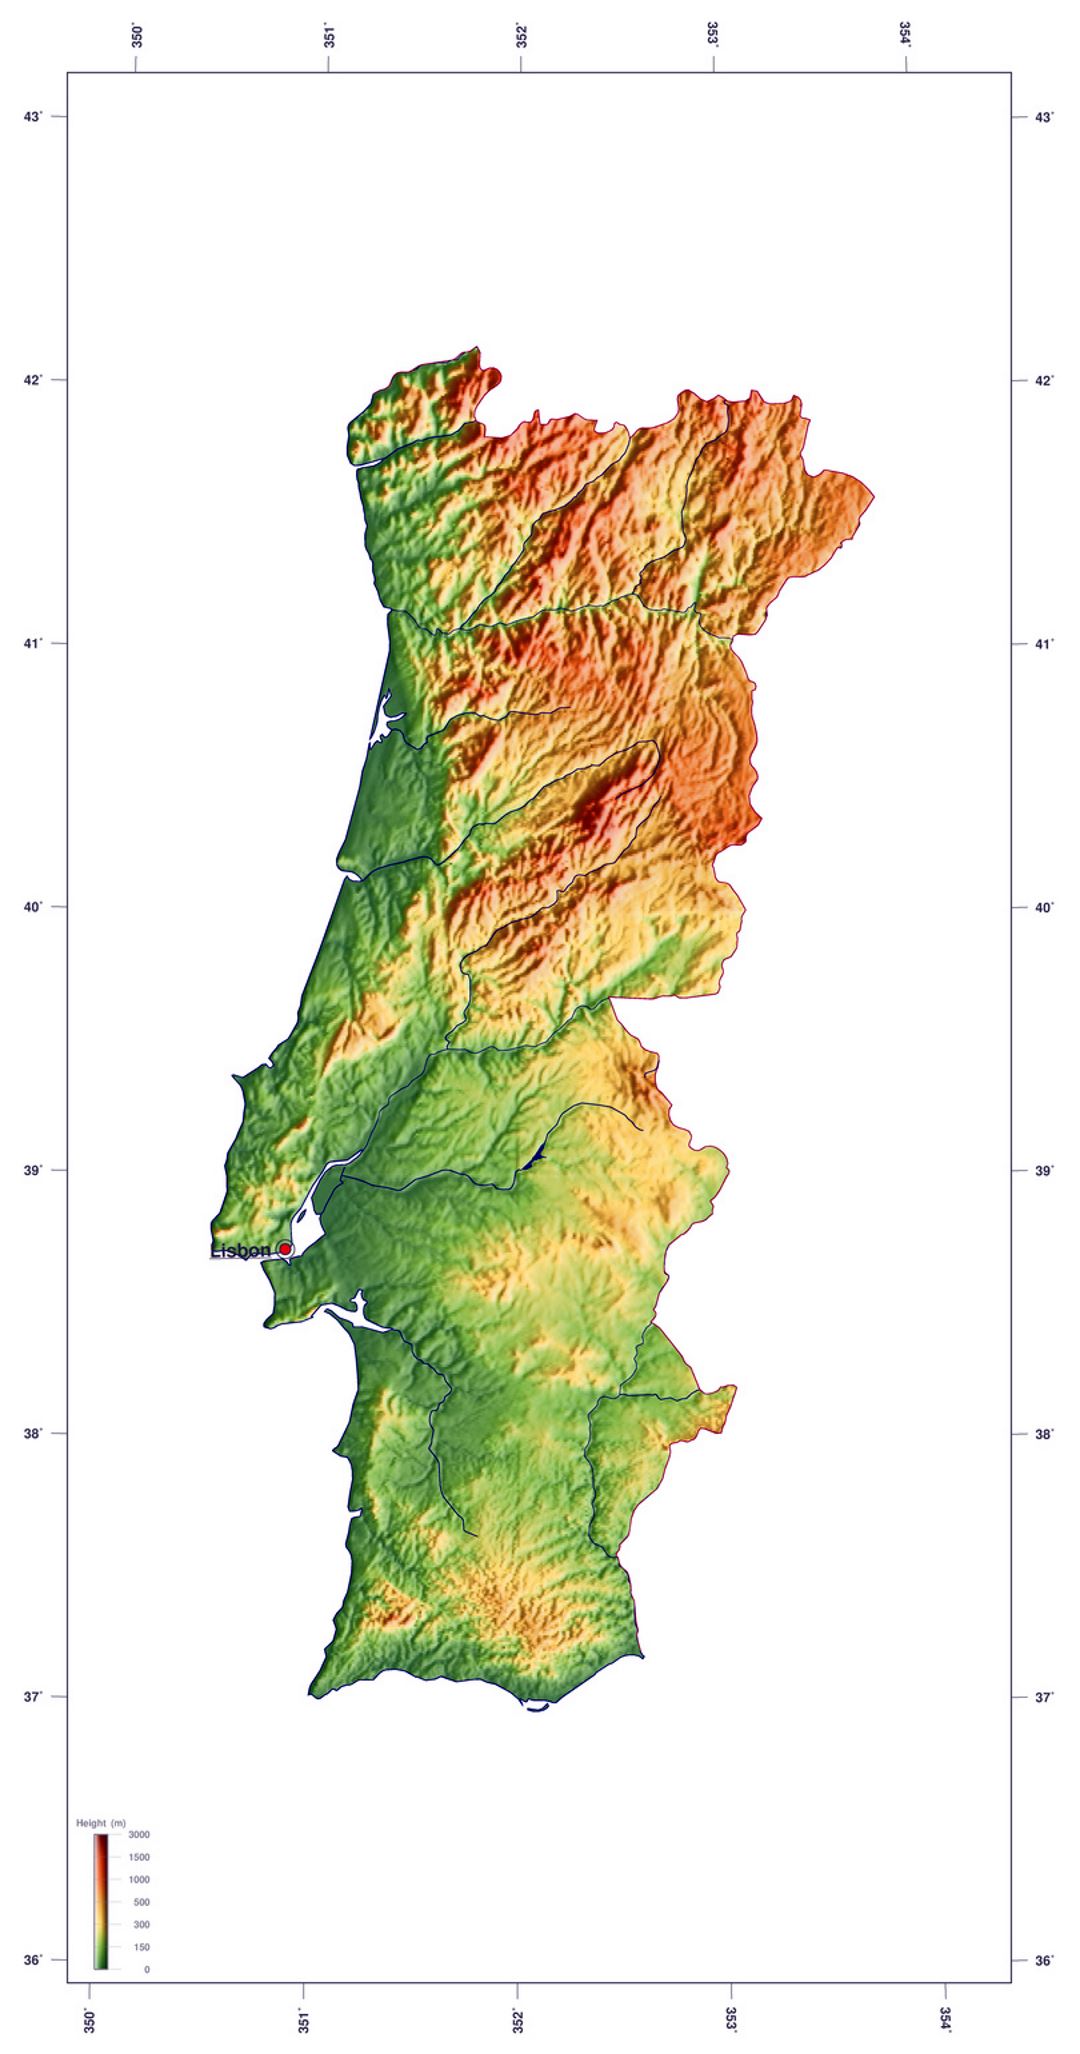 Detallado mapa de elevación de Portugal